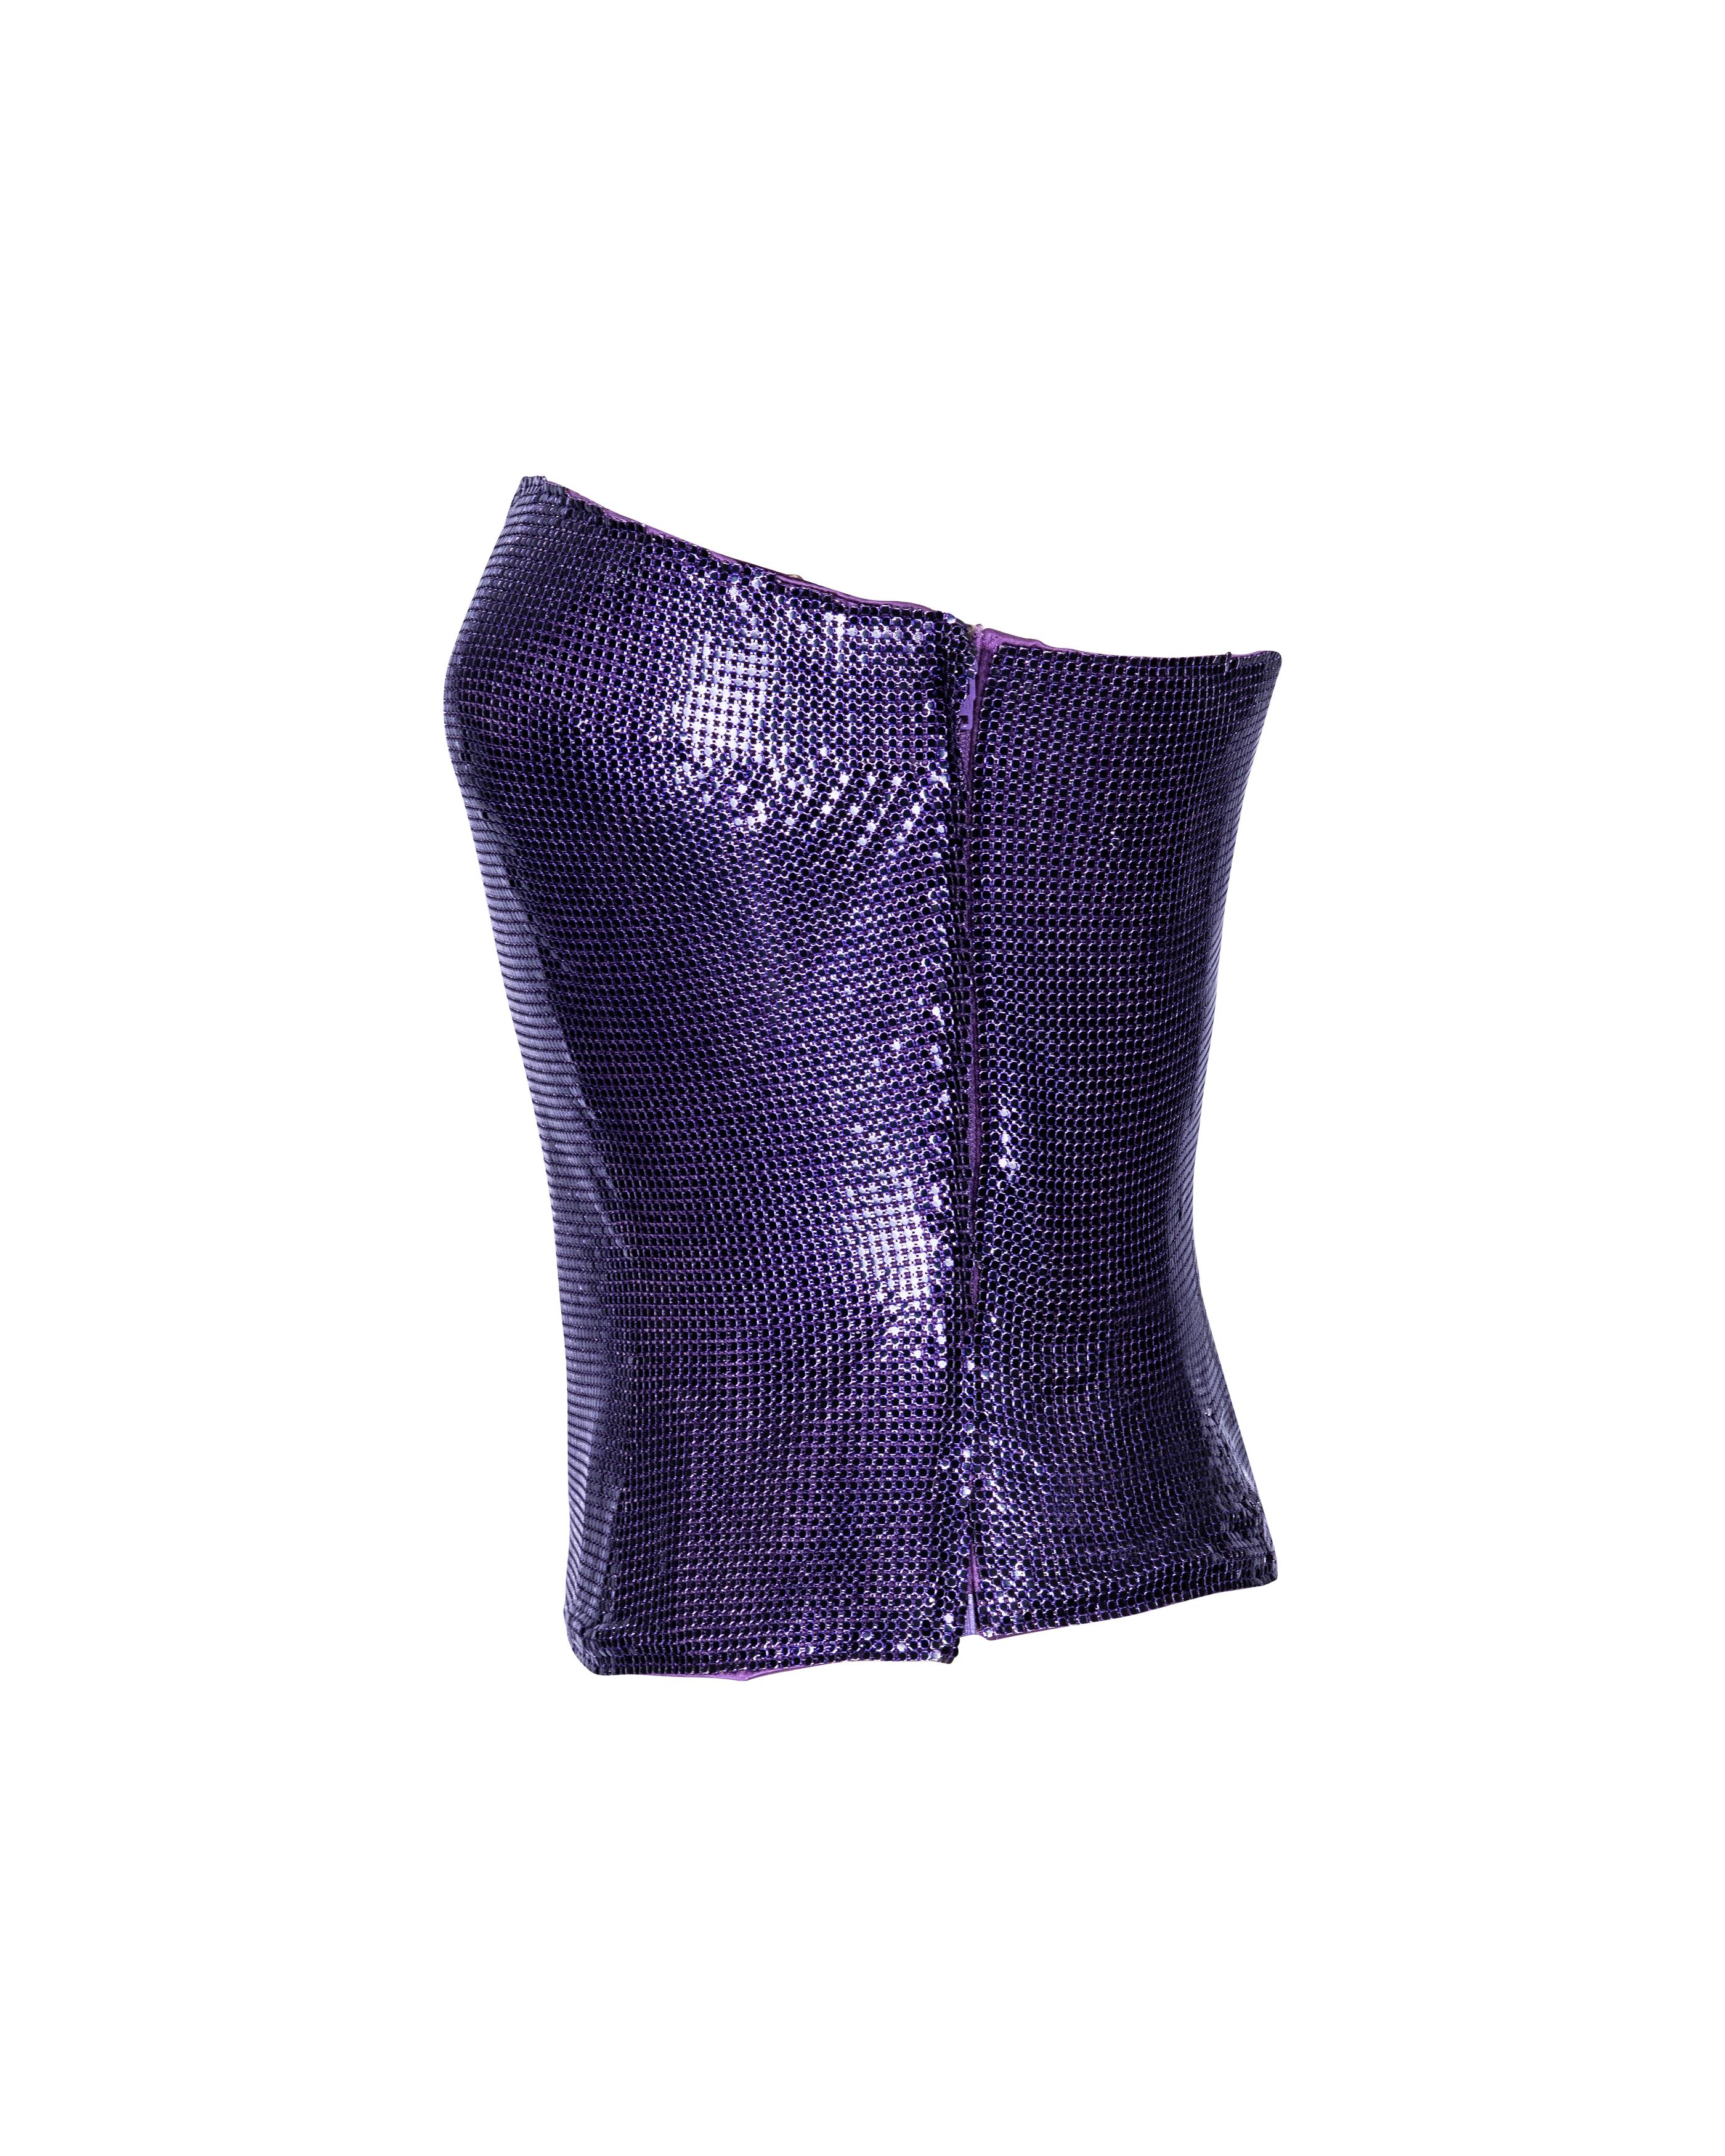 S/S 1998 Atelier Versace Haute Couture Top cotte de mailles violet sans bretelles Oroton Pour femmes en vente